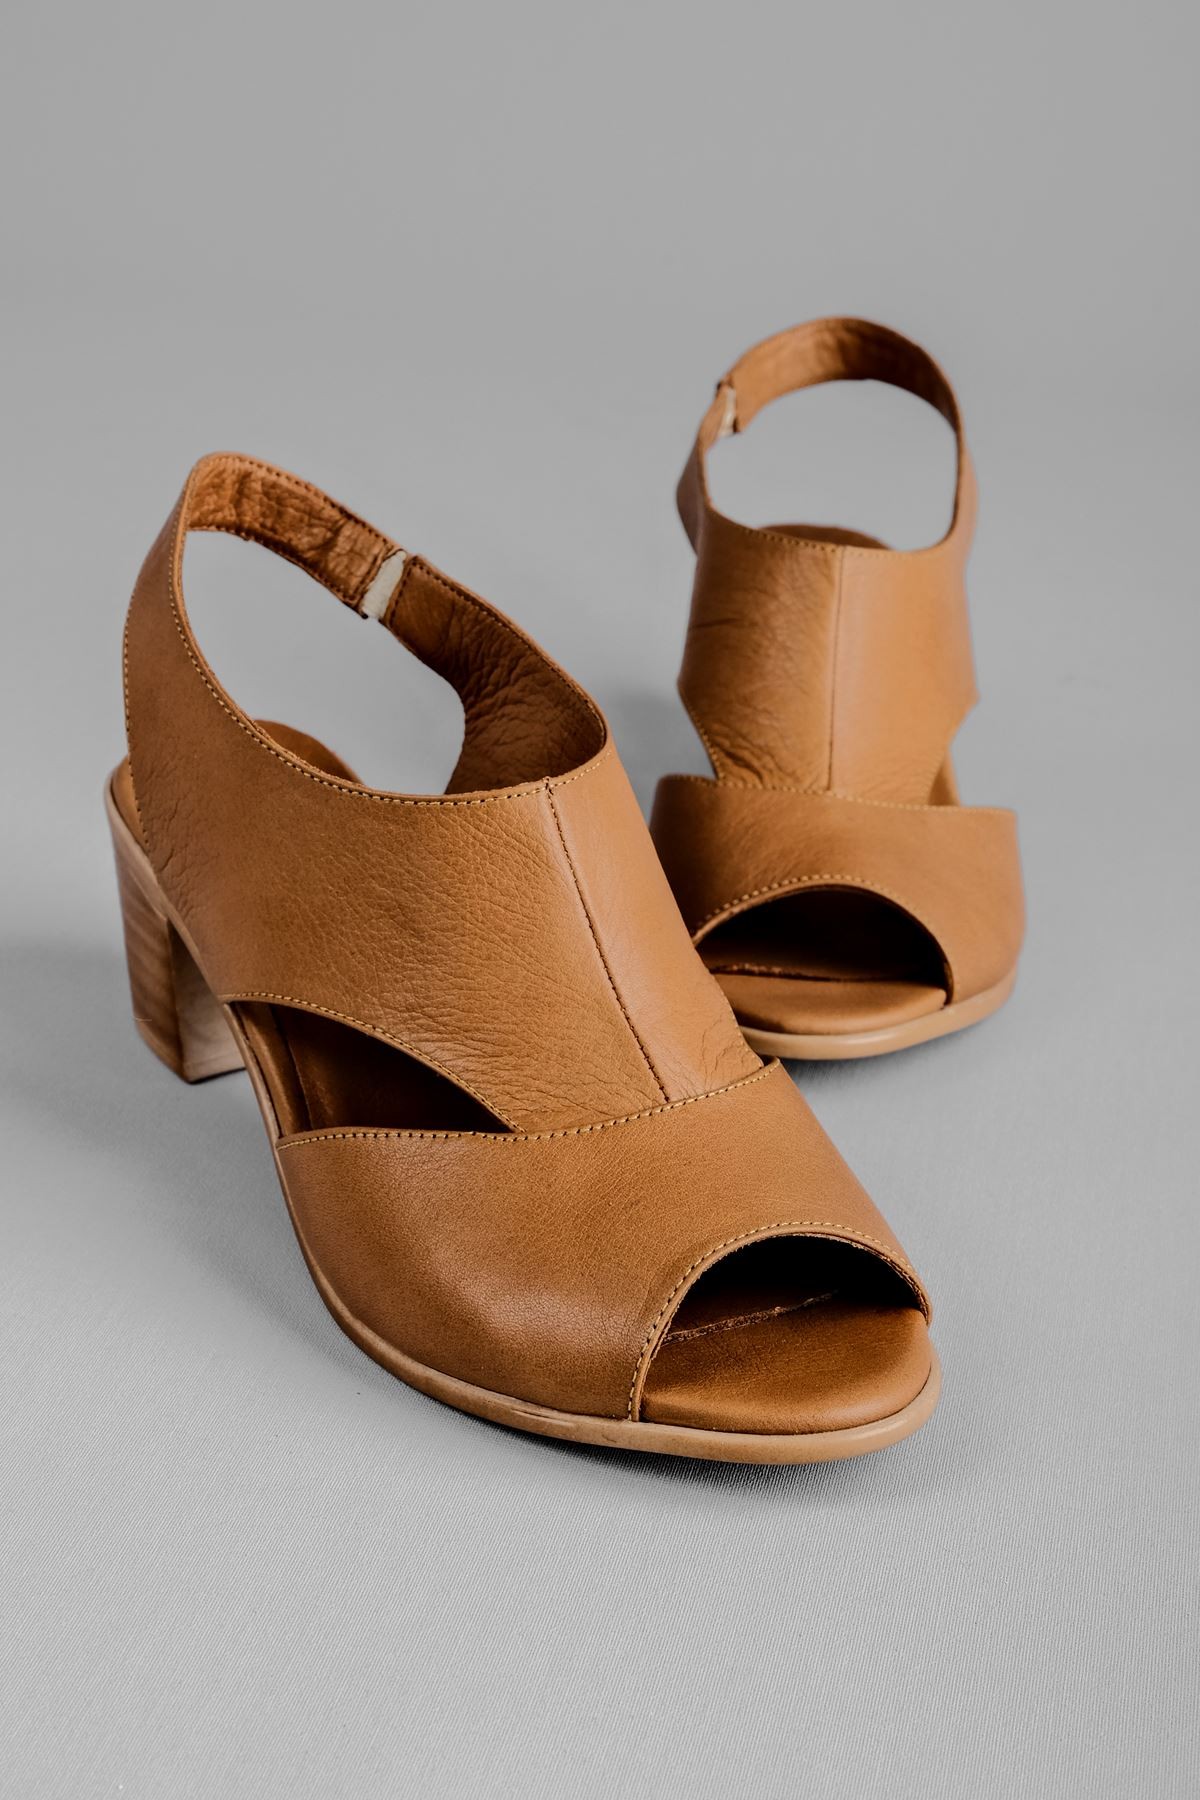 Breda Kadın Hakiki Deri Topuklu Ayakkabı (B2119 ) - Taba